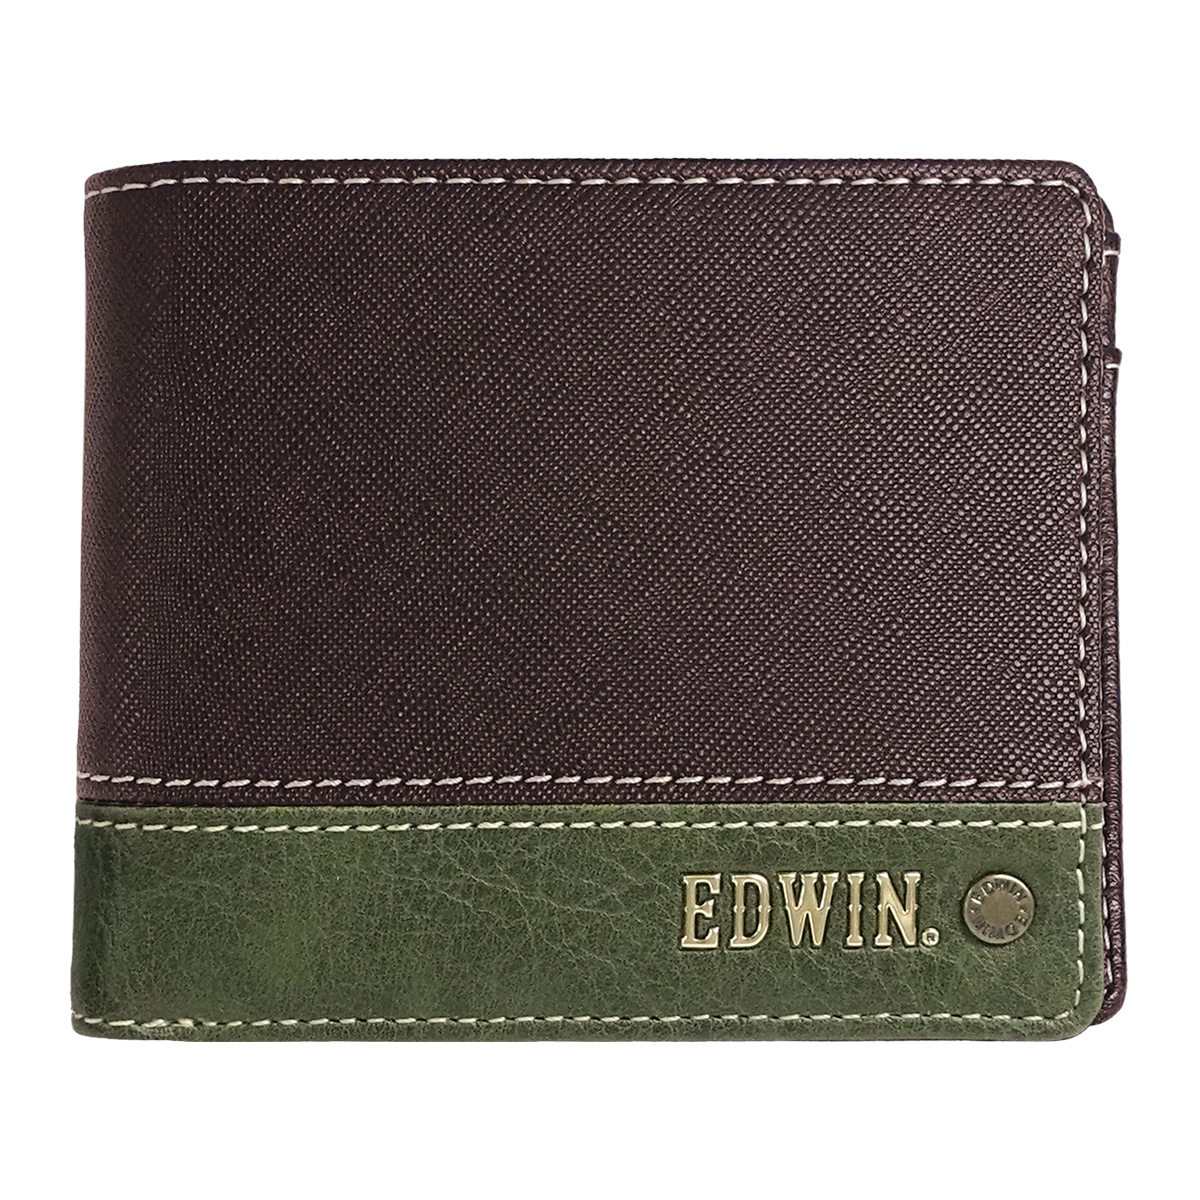 エドウイン EDWIN 財布 サイフ 二つ折財布 メンズ レディース 合成皮革 カード収納 プレゼン...